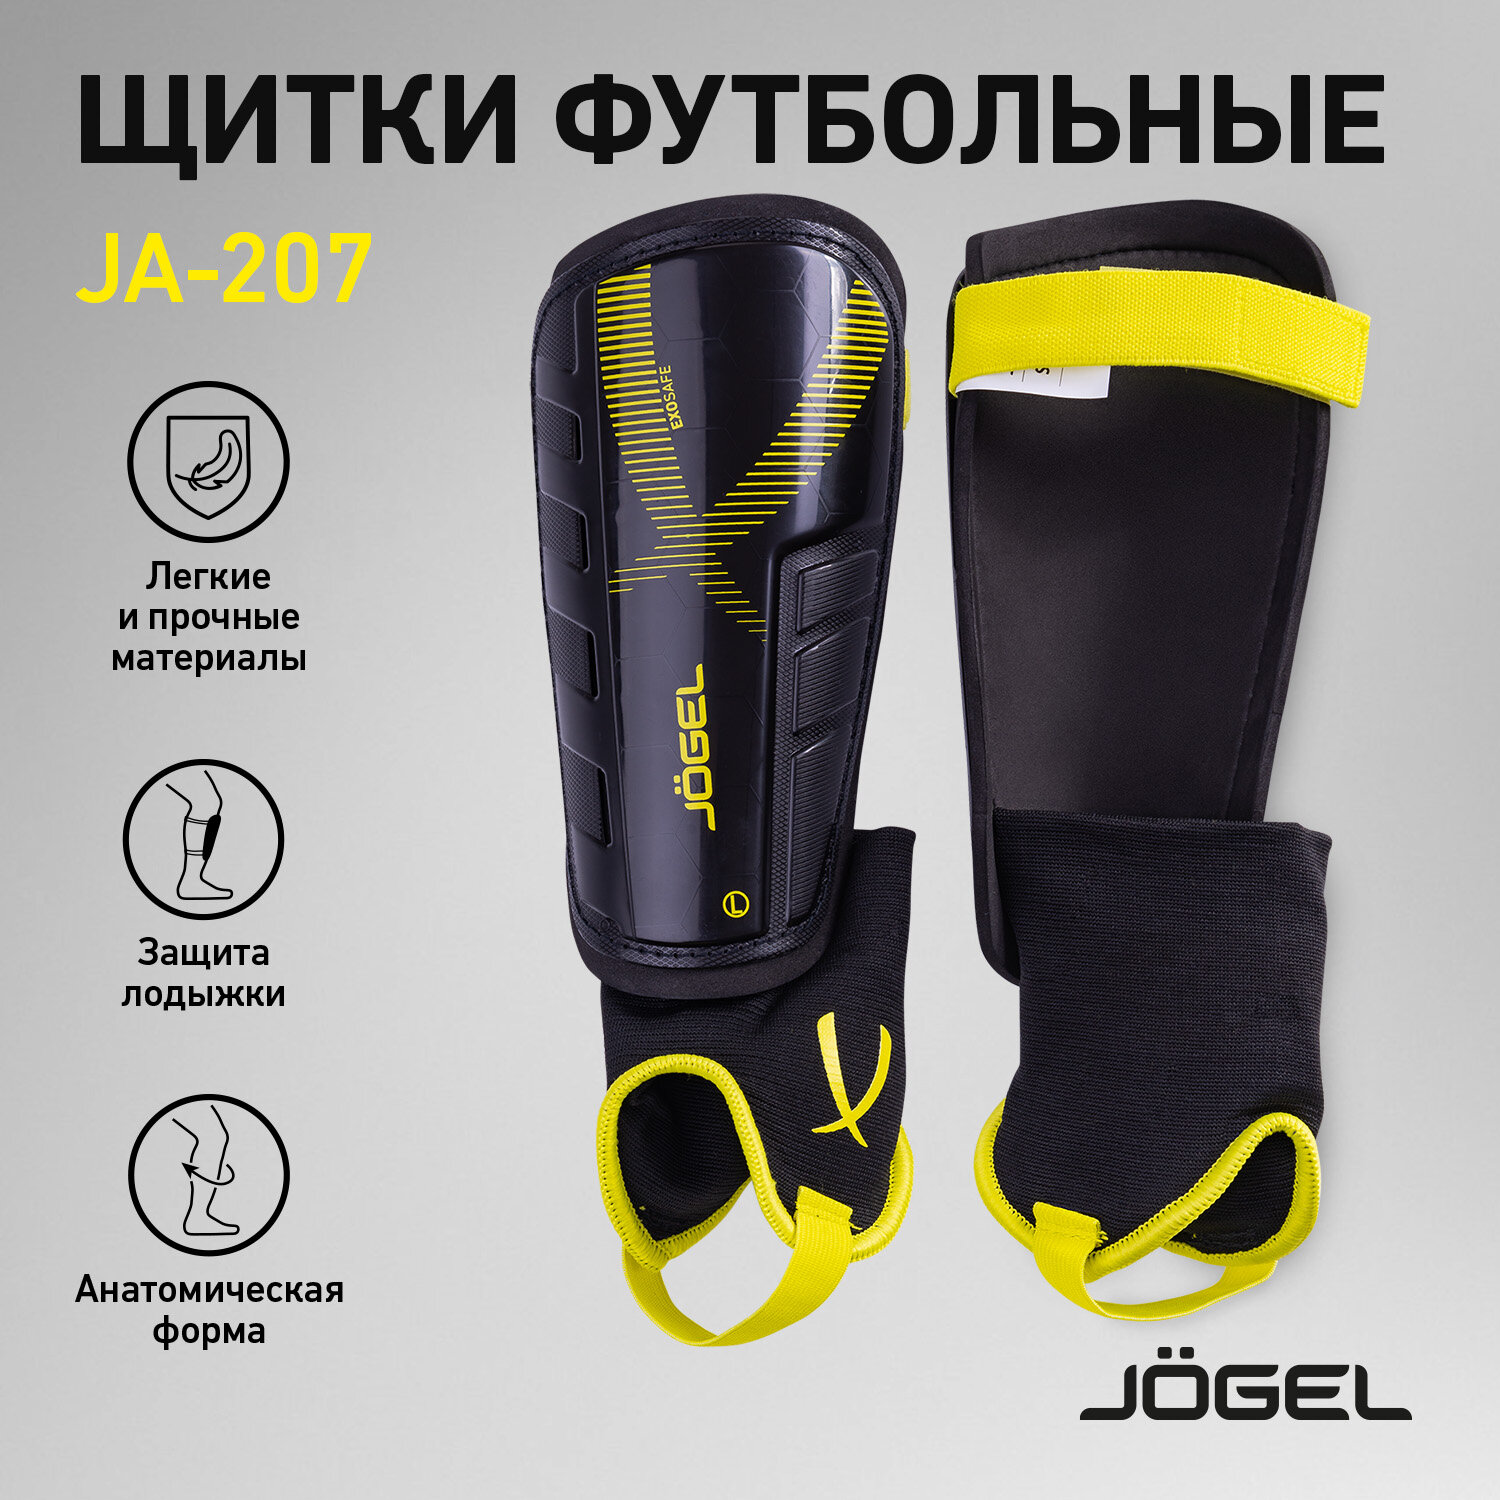 Щитки футбольные Jögel Ja-207, черный размер L